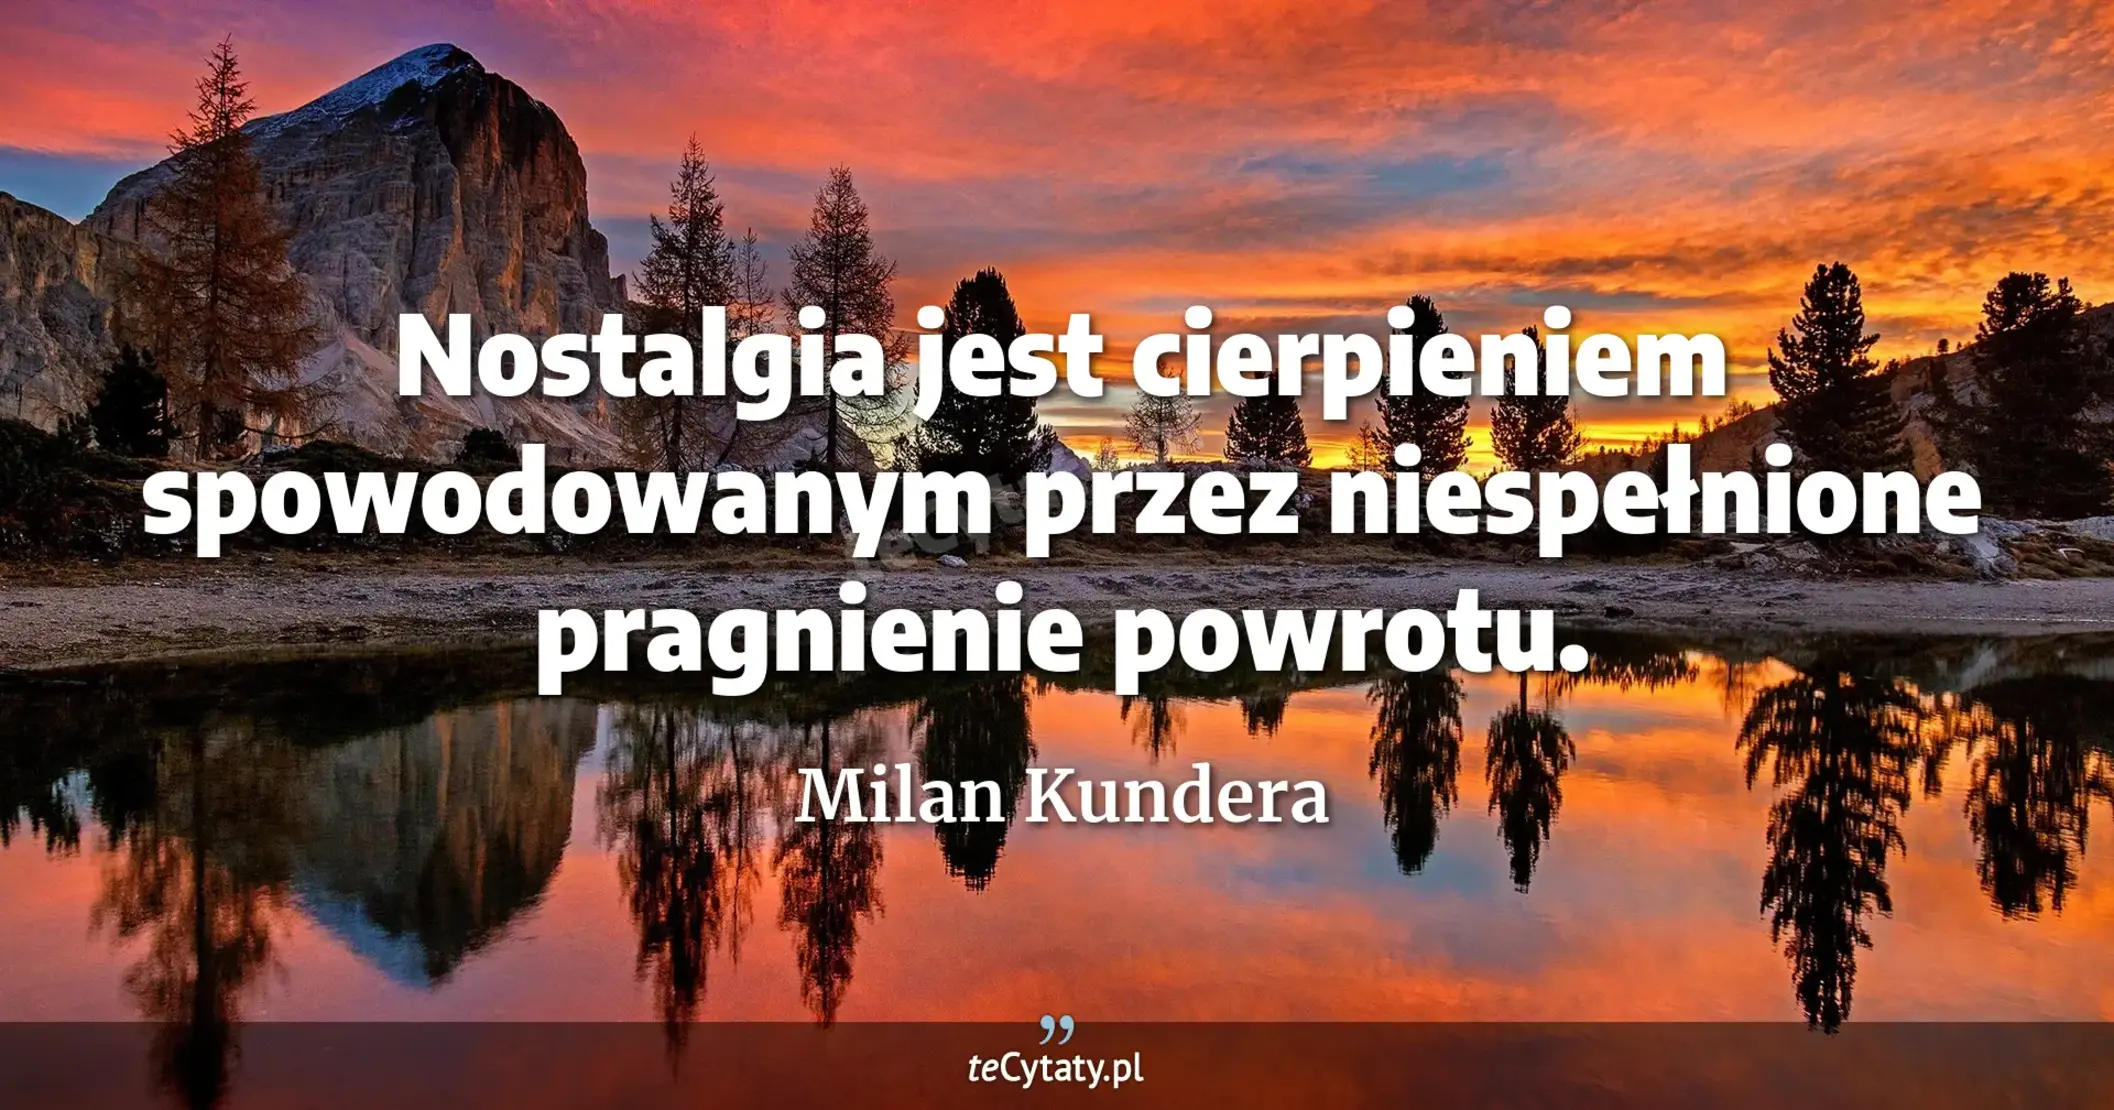 Nostalgia jest cierpieniem spowodowanym przez niespełnione pragnienie powrotu. - Milan Kundera